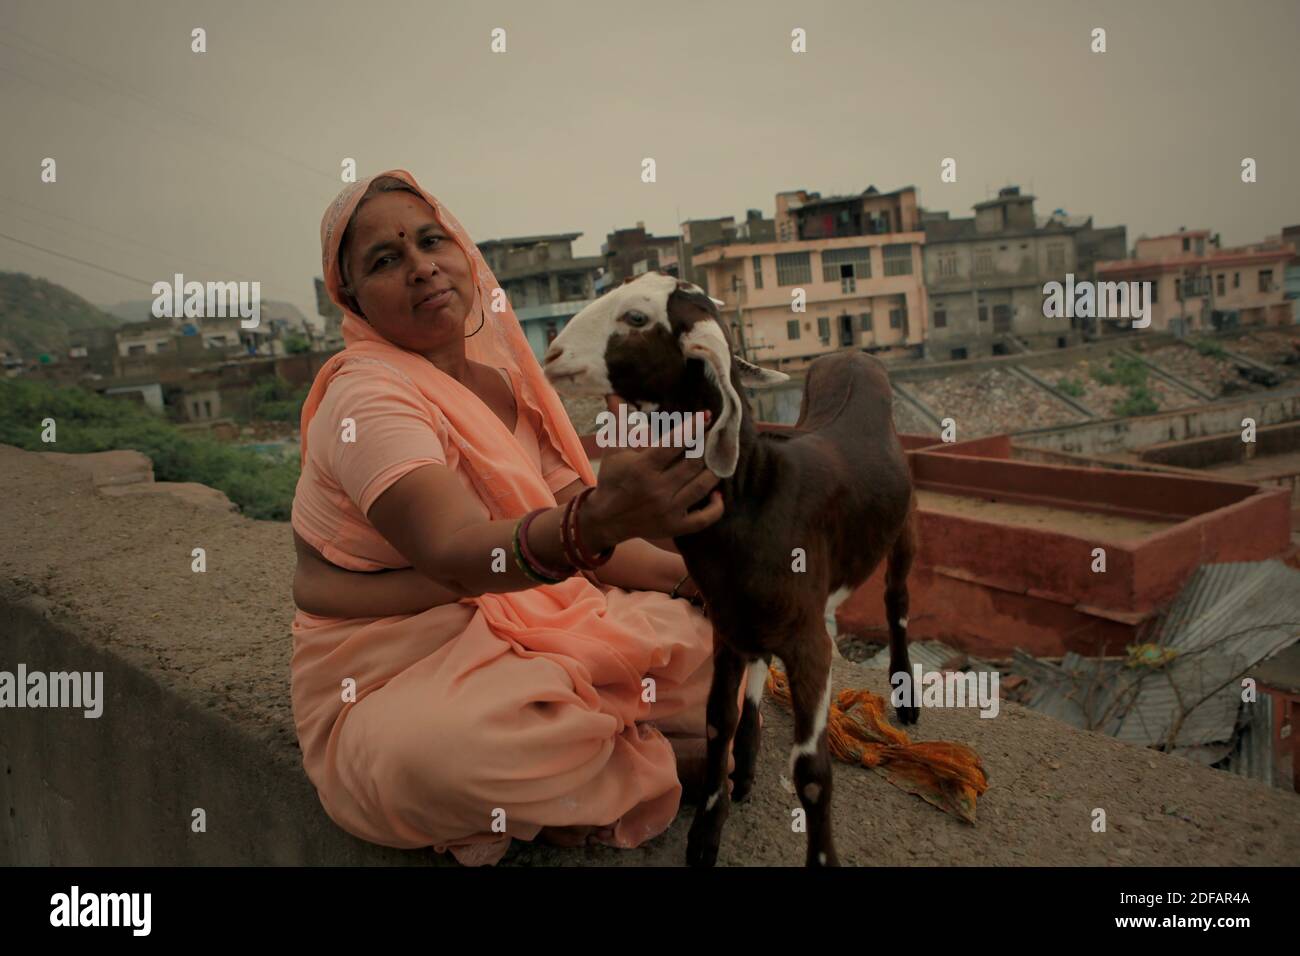 Porträt einer Frau, wie sie auf einer Betonwand mit einer Ziege sitzt, auf der Seite einer Straße, die nach Surya Mandir (Sonnentempel) in Rajasthan, Indien führt. Stockfoto